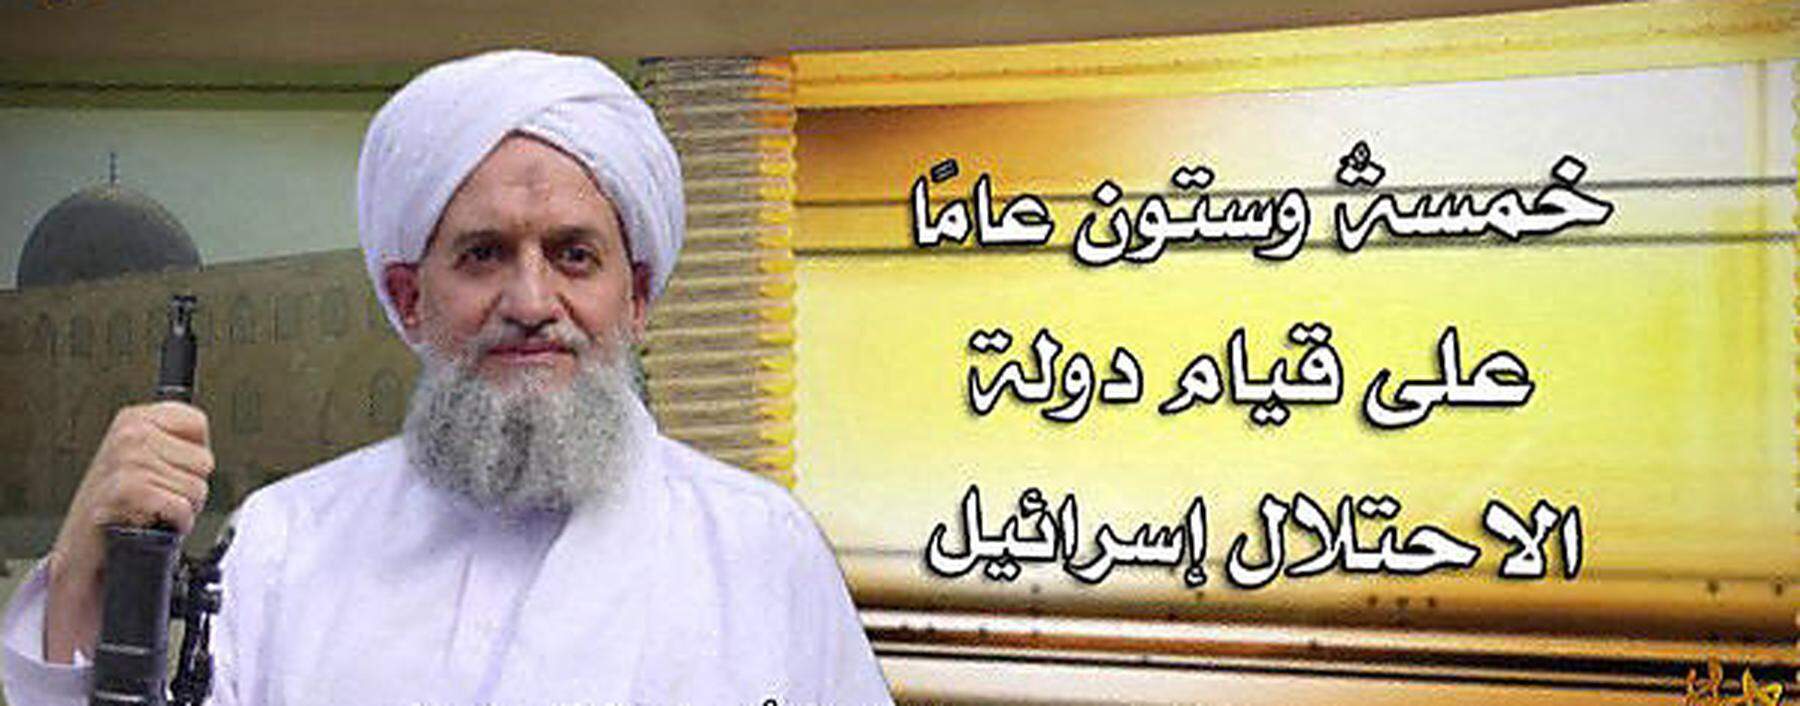 Aiman al-Zawahiri in einer seiner Videobotschaften.